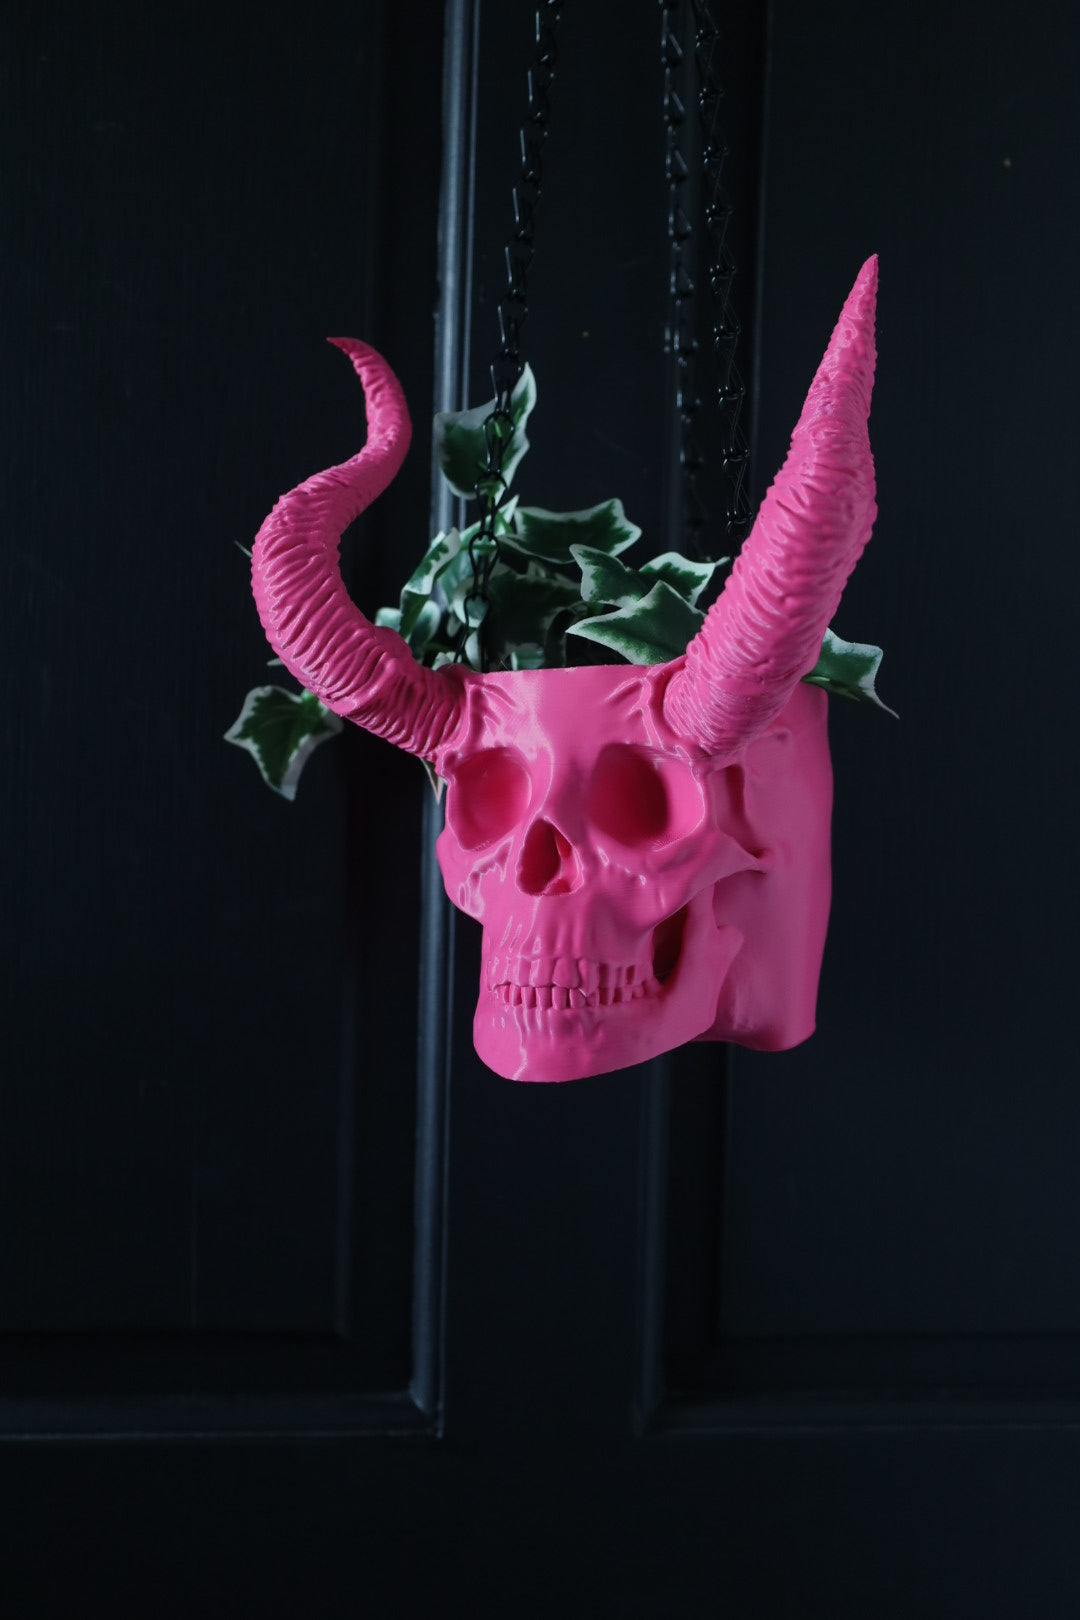 Horned Skull Hanging Planter